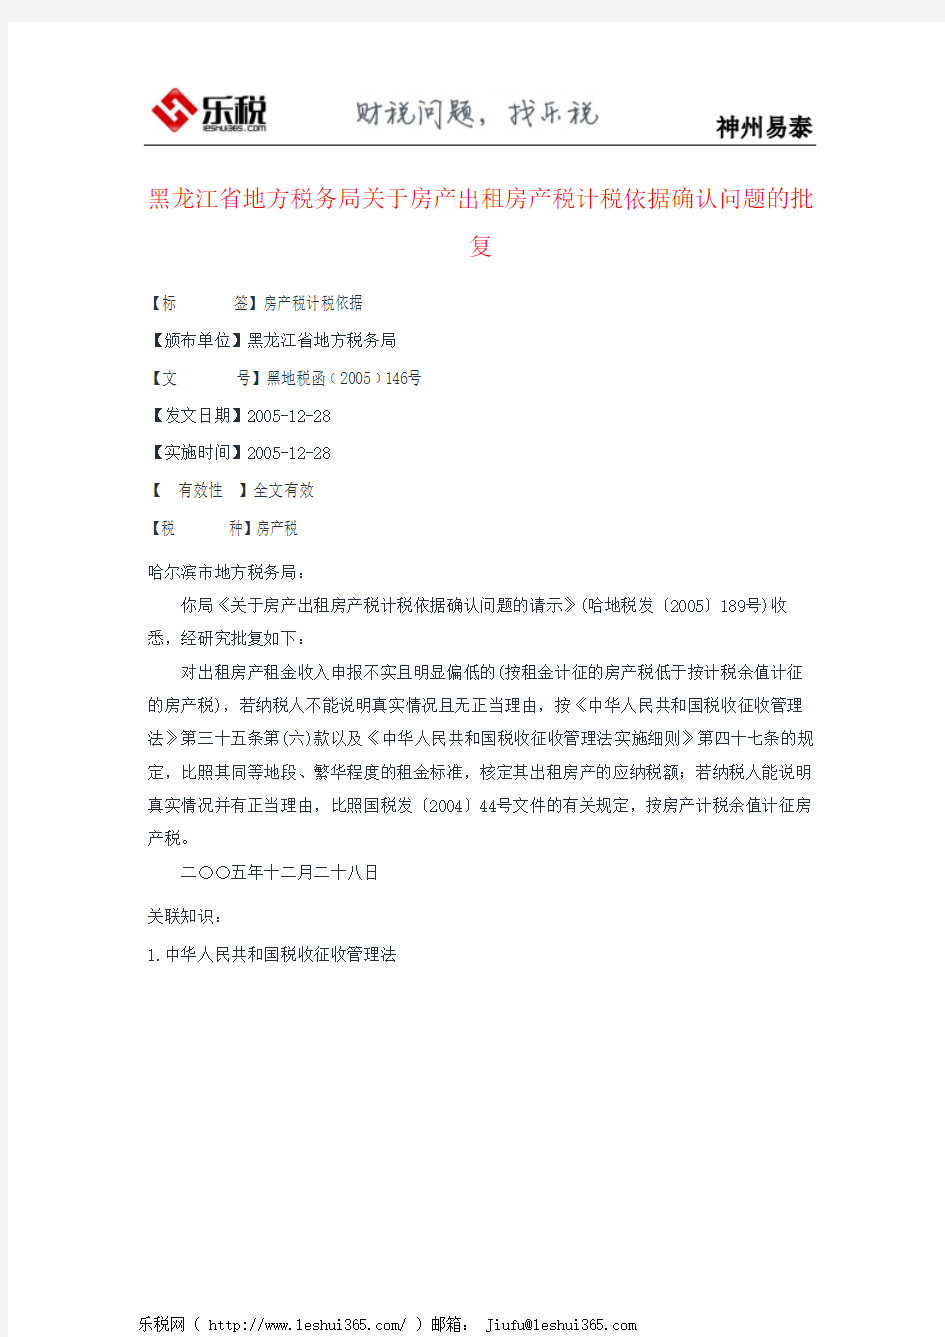 黑龙江省地方税务局关于房产出租房产税计税依据确认问题的批复